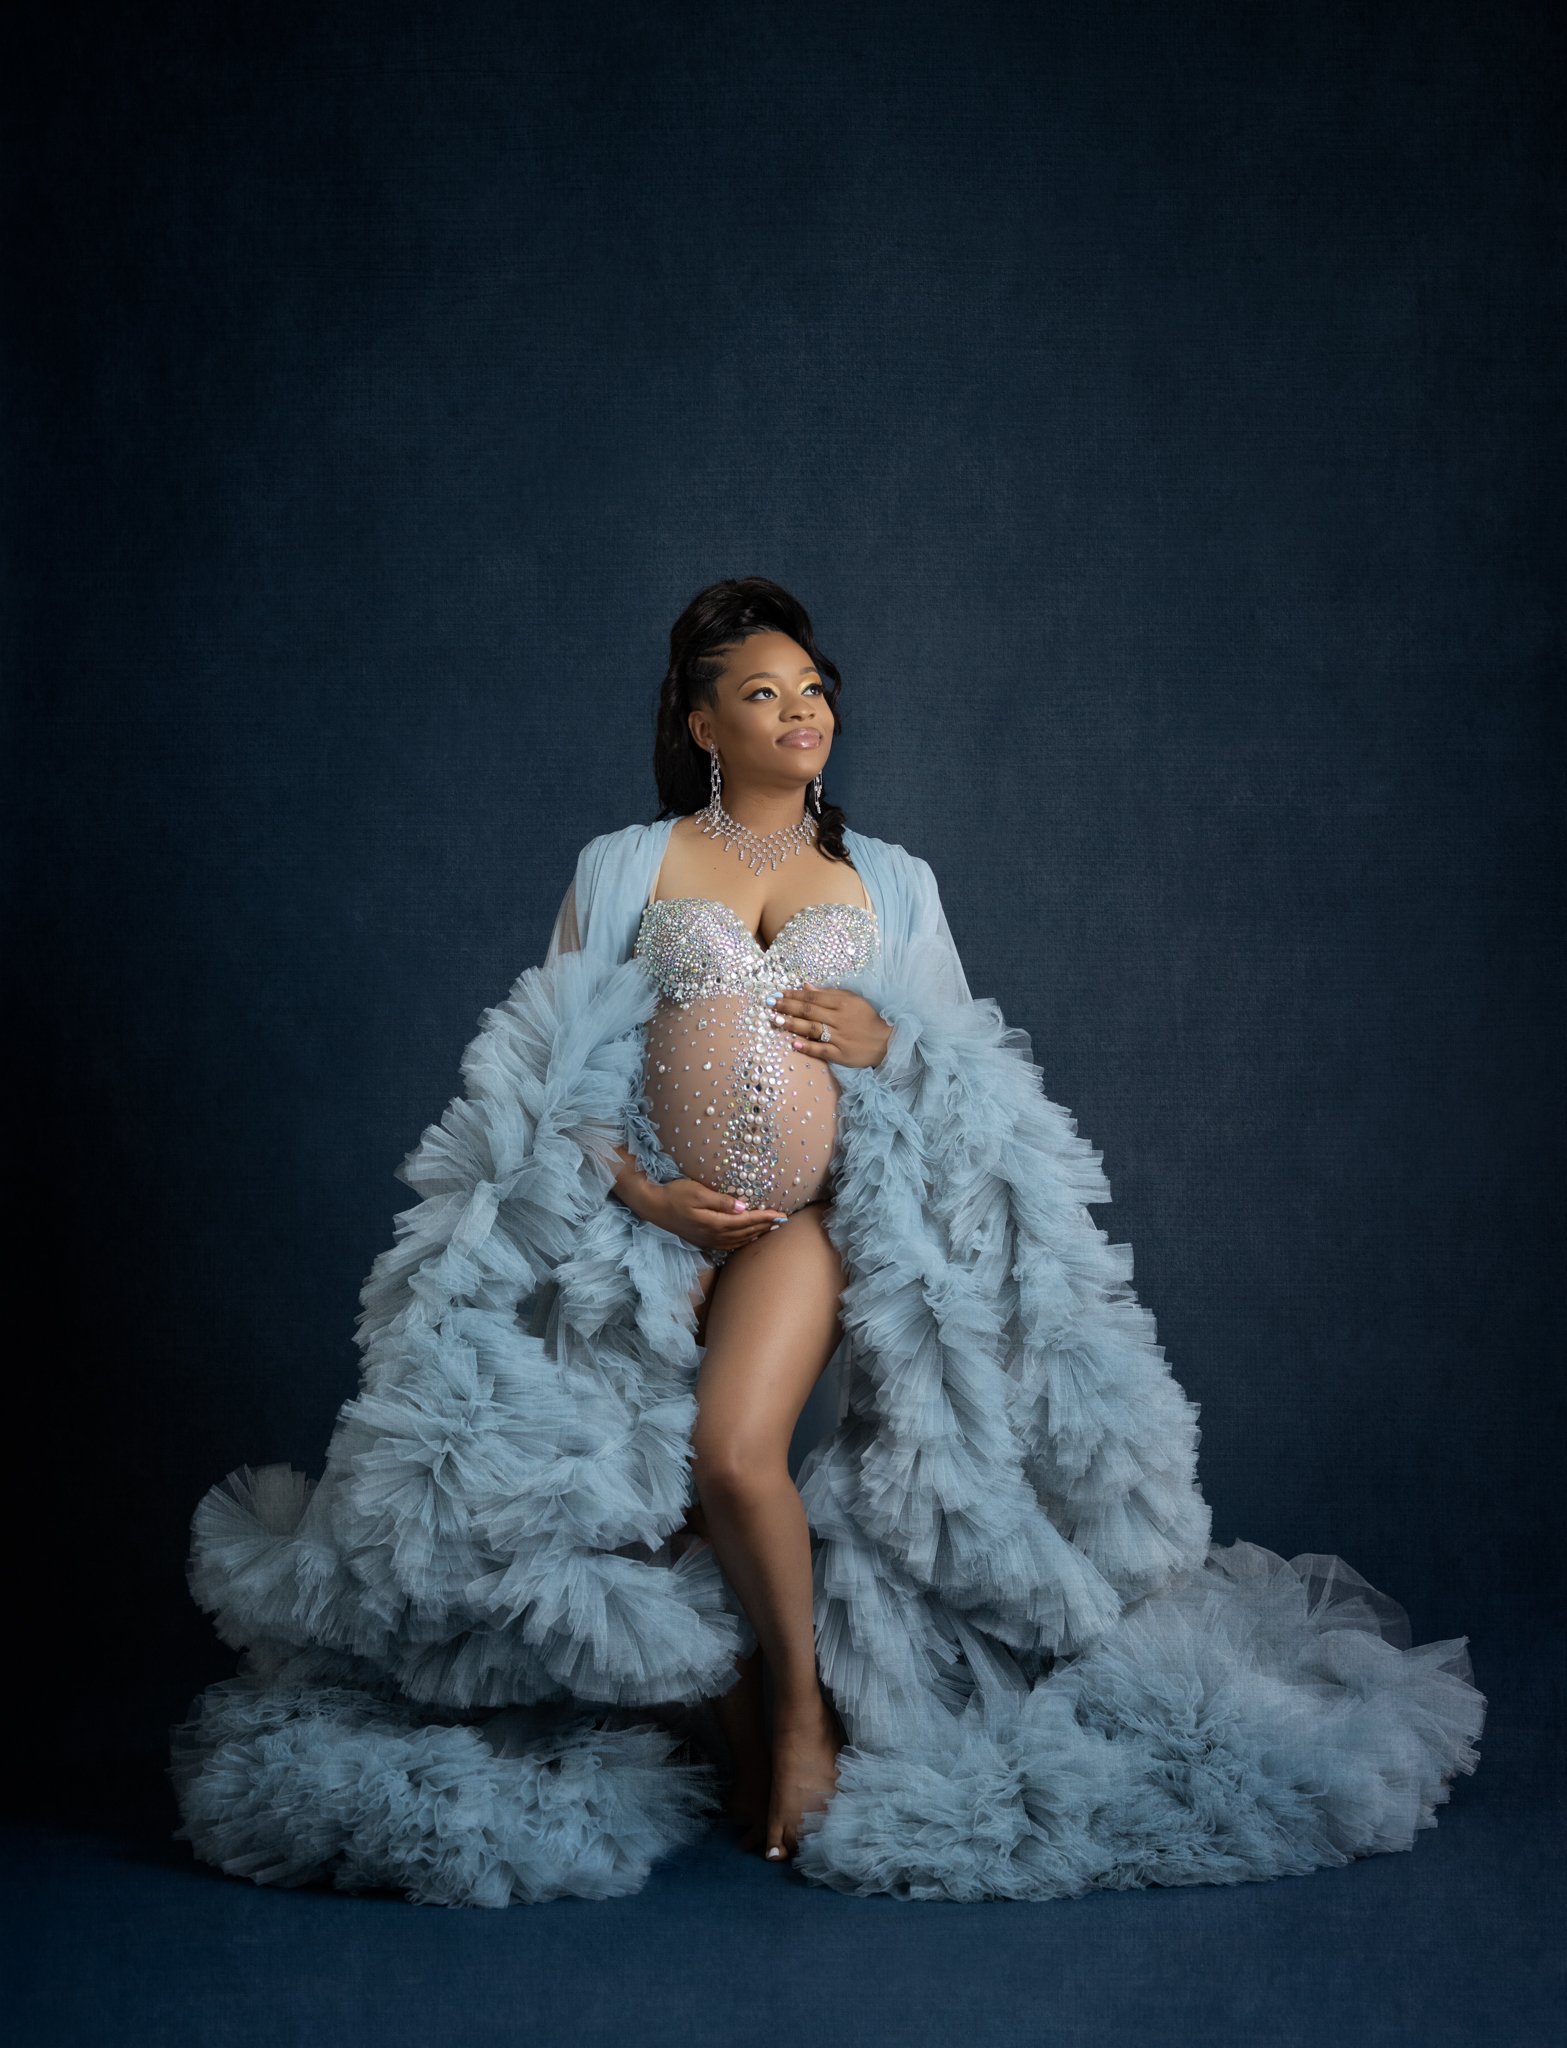 Cincinnati Maternity & Newborn Photographer